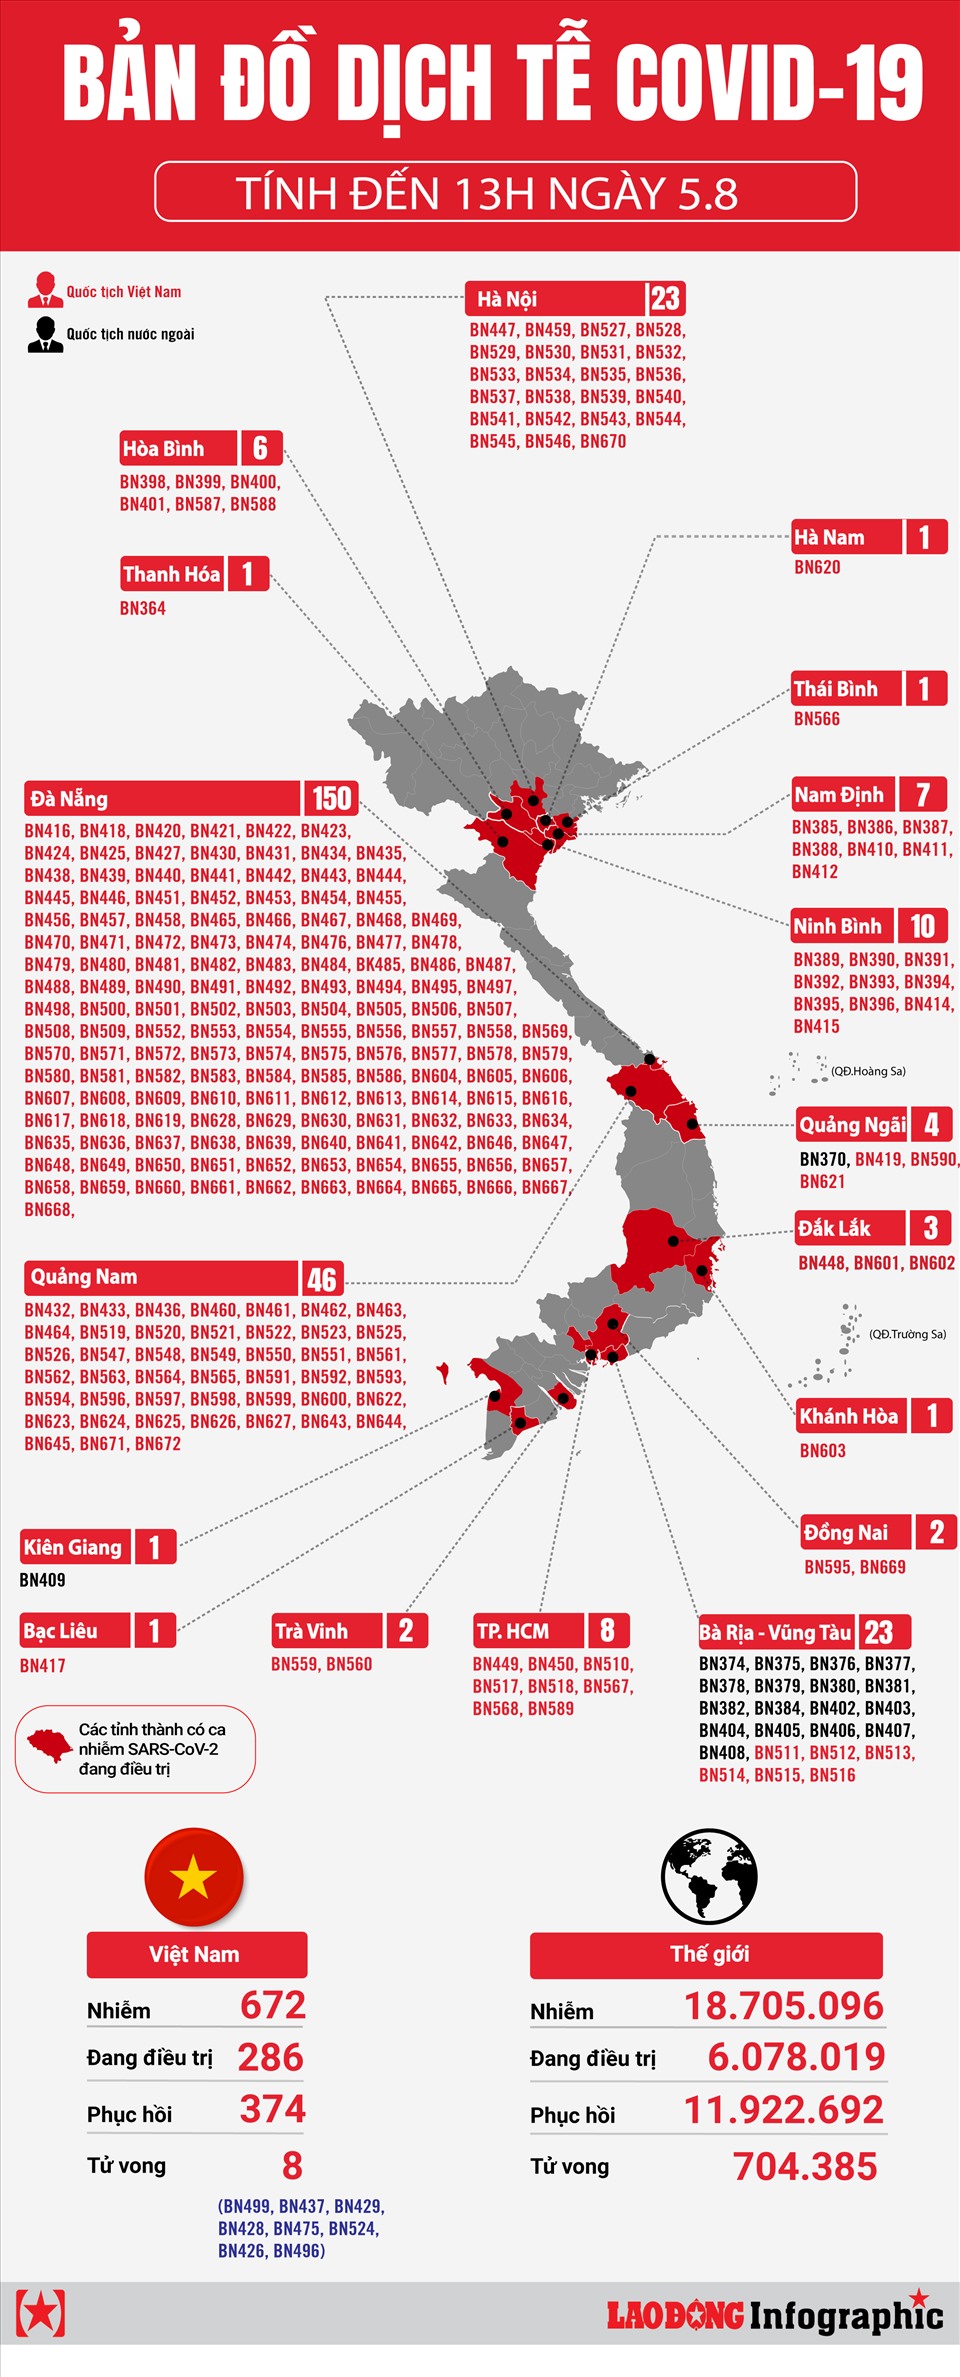 Bản đồ dịch tễ COVID-19 tại Việt Nam tính đến 13h ngày 5.8 năm 2024 được cập nhật liên tục, giúp cho chúng ta có cái nhìn tổng quan, chính xác về tình hình dịch bệnh tại cả nước. Hãy tiếp tục ủng hộ những nỗ lực của chính phủ và cơ quan chức năng trong cuộc chiến chống lại Covid-